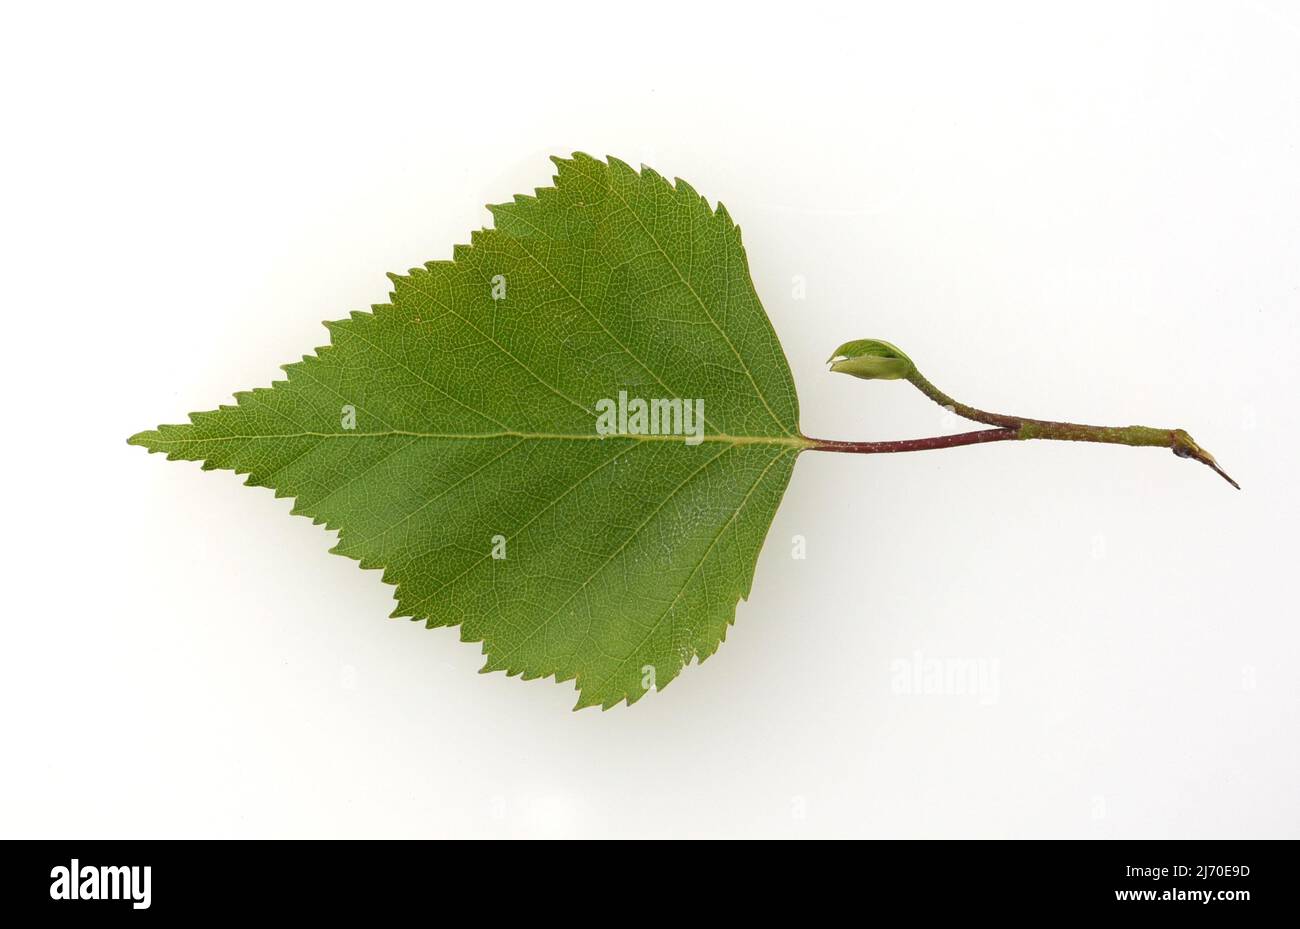 Birke, Birke betula, ist ein einheimischer Baum, der auch medizinisch als Heilpflanze verwendet wird. Stockfoto